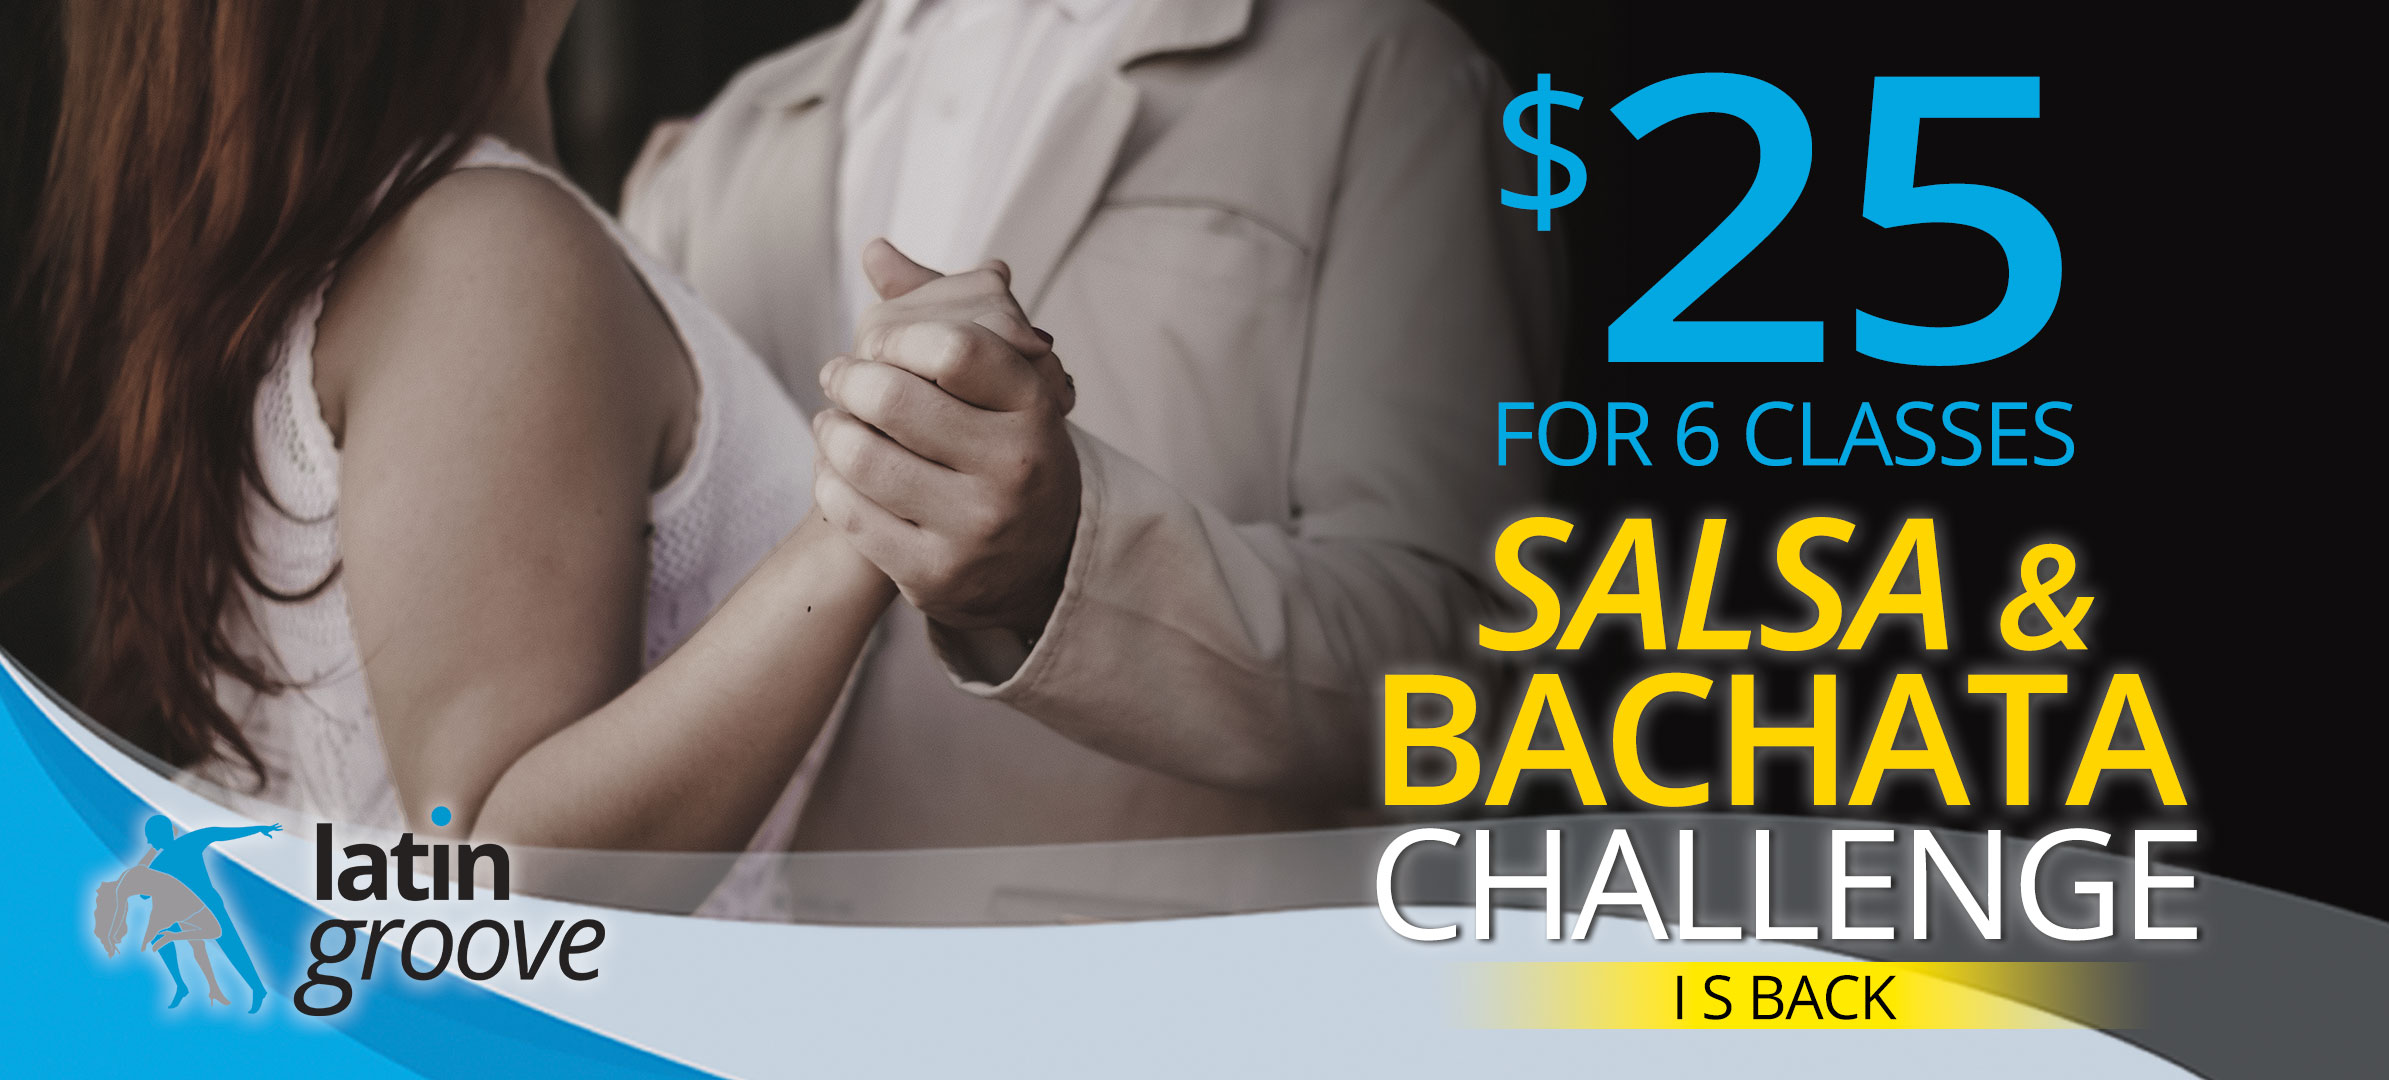 Salsa & Bachata Challenge is back!